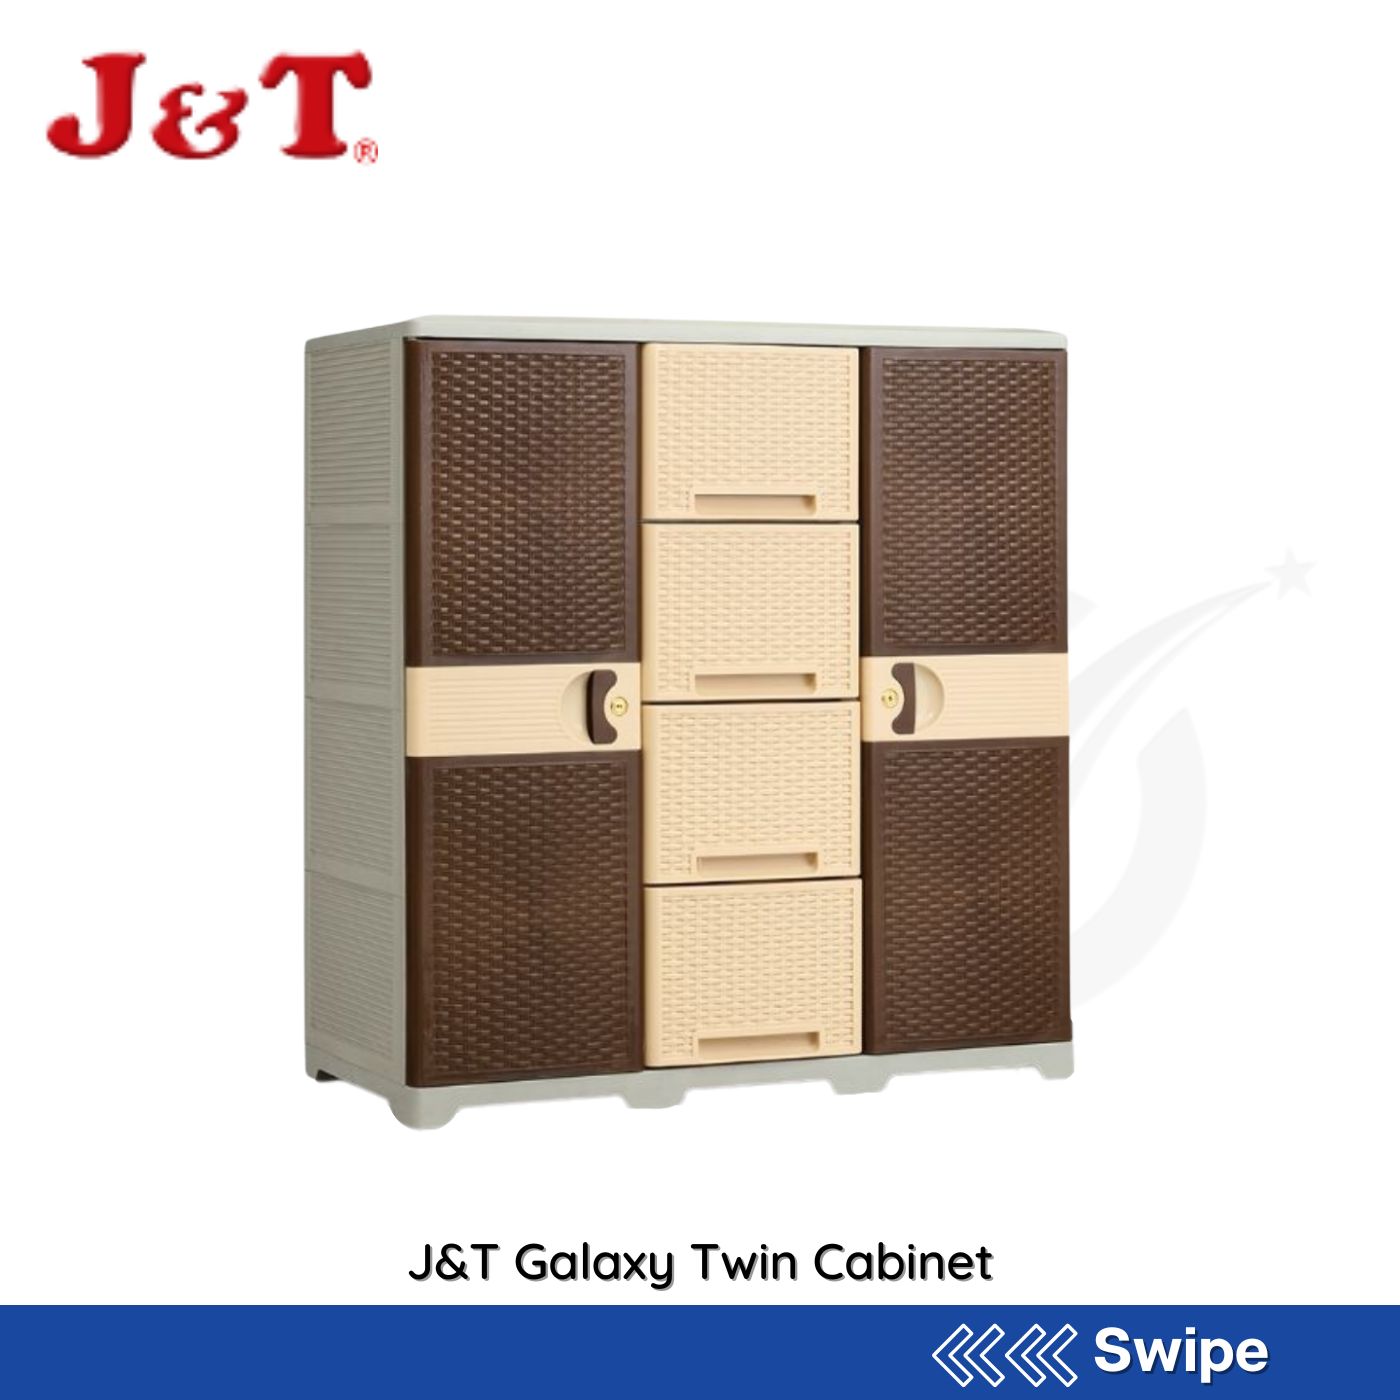 J&T Galaxy Twin Cabinet